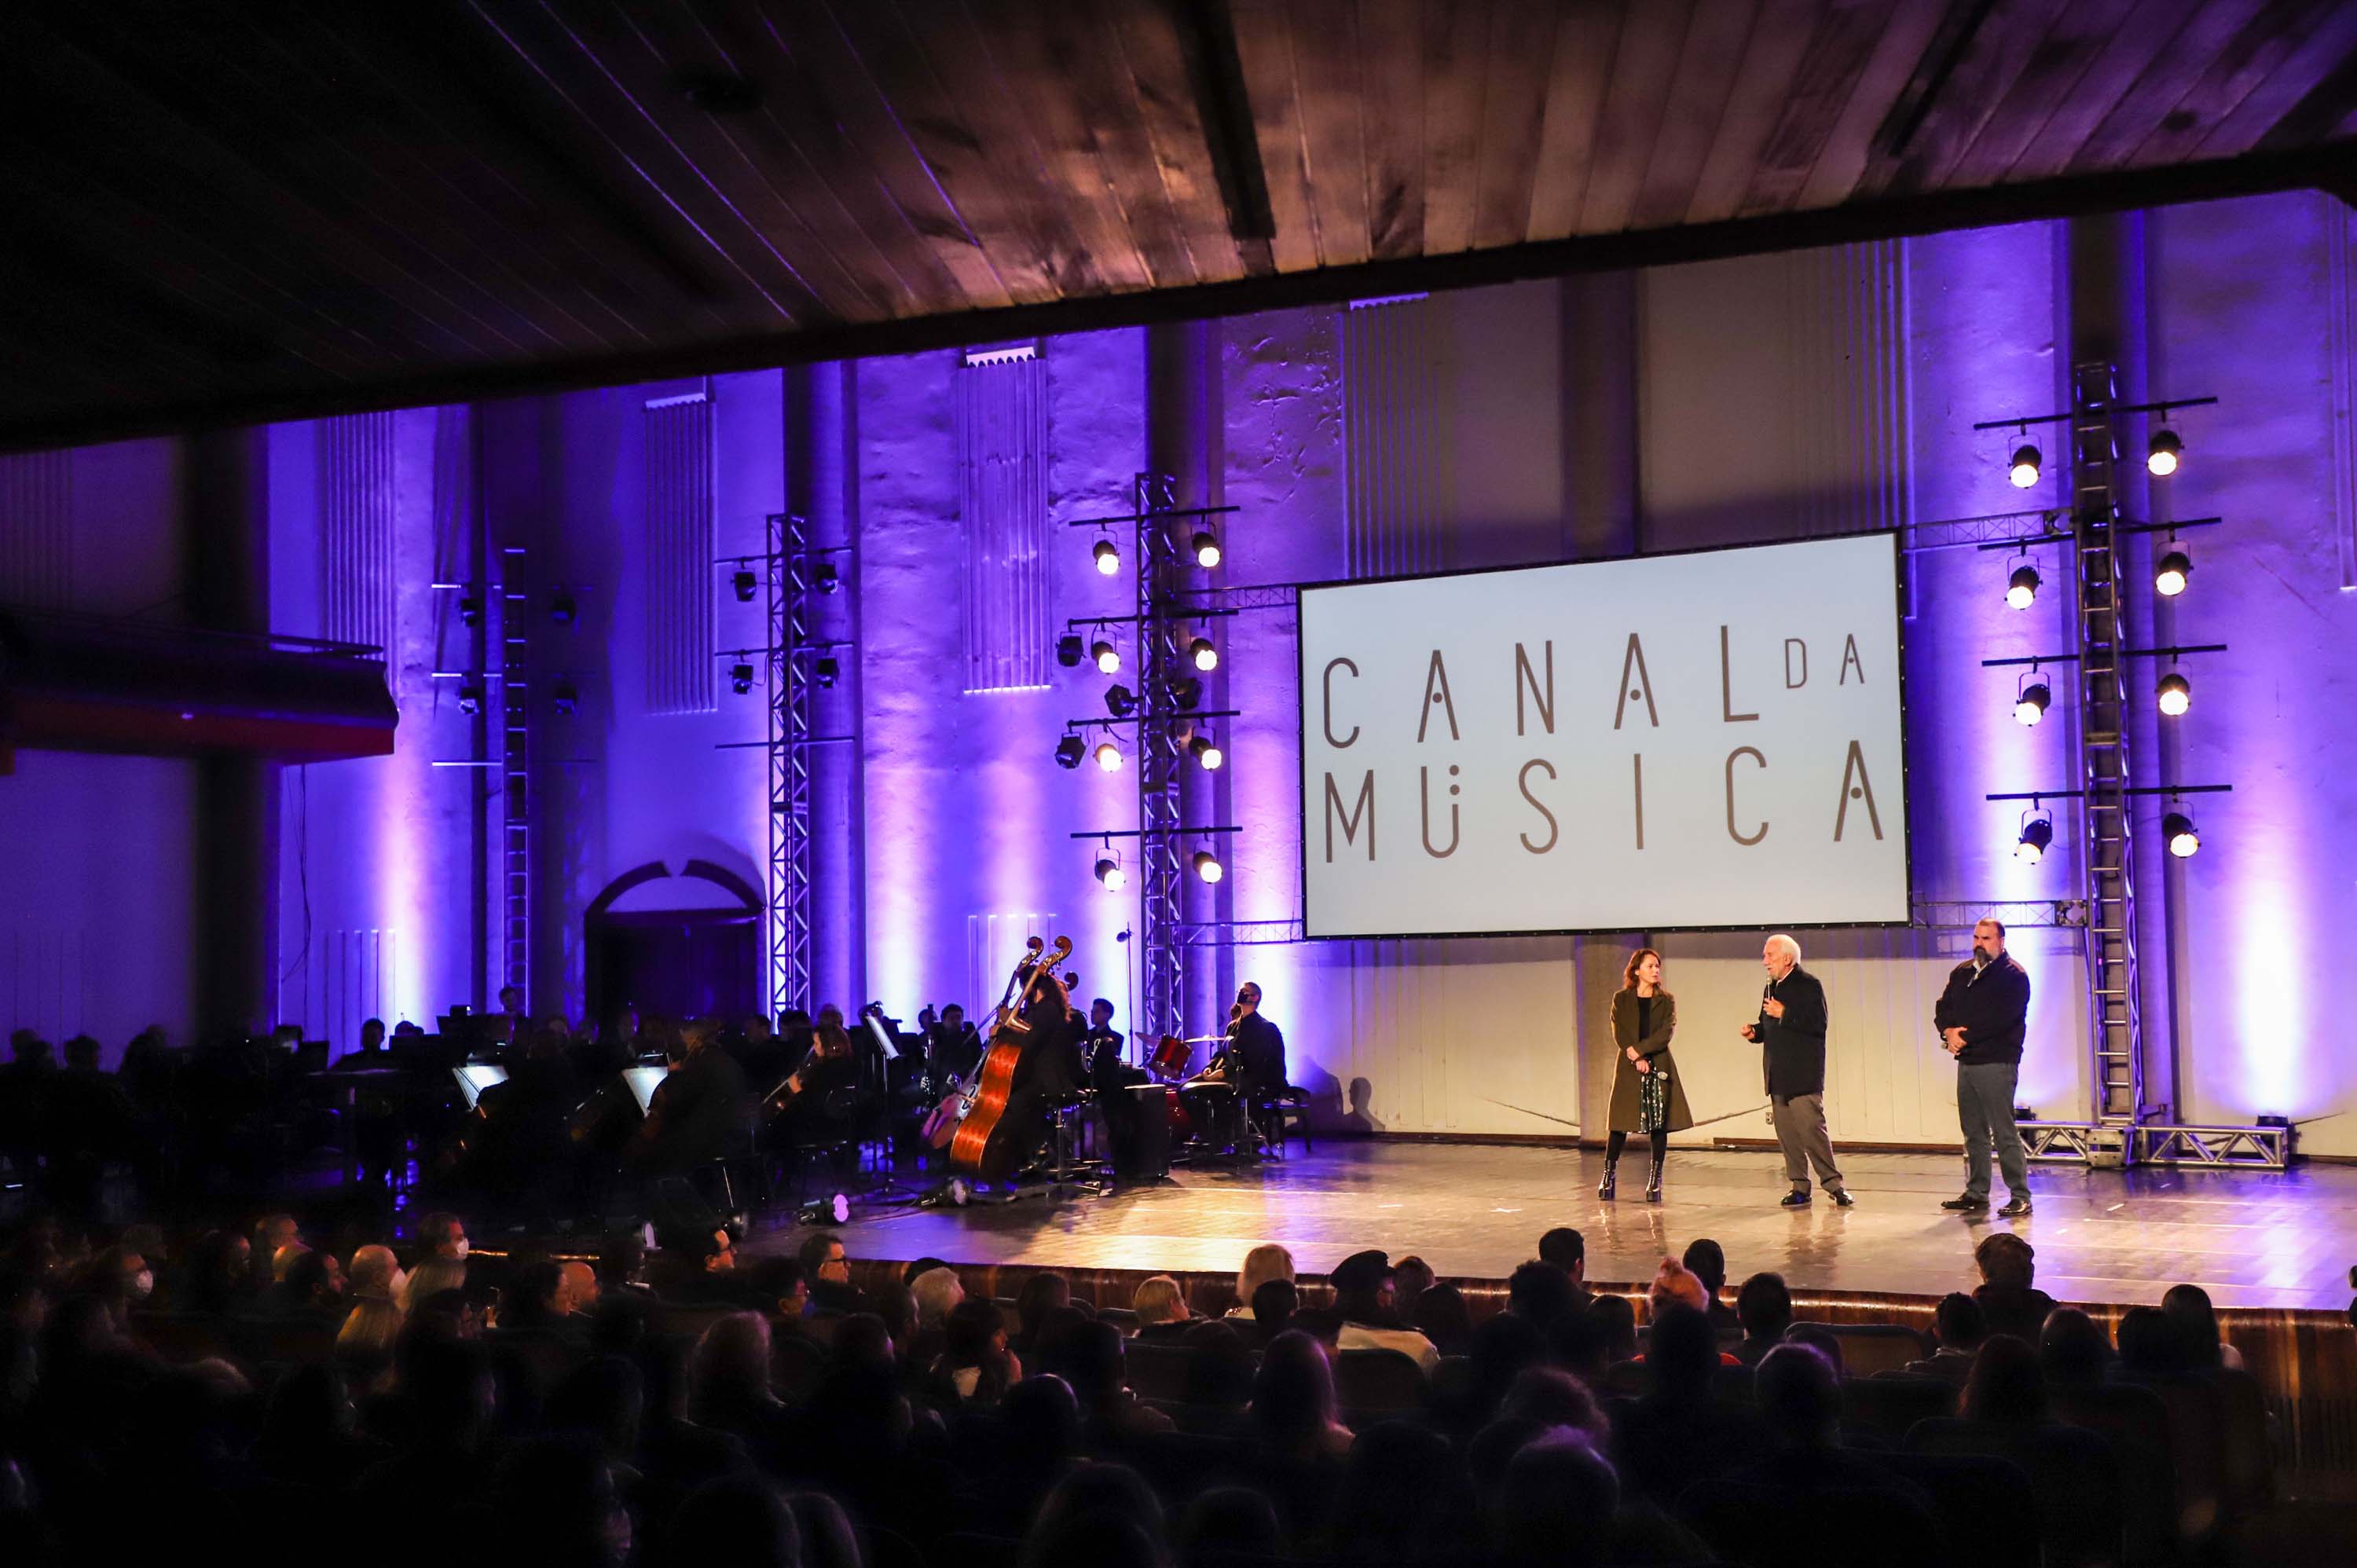 Grande Auditório do Canal da Música retoma as atividades em noite de gala